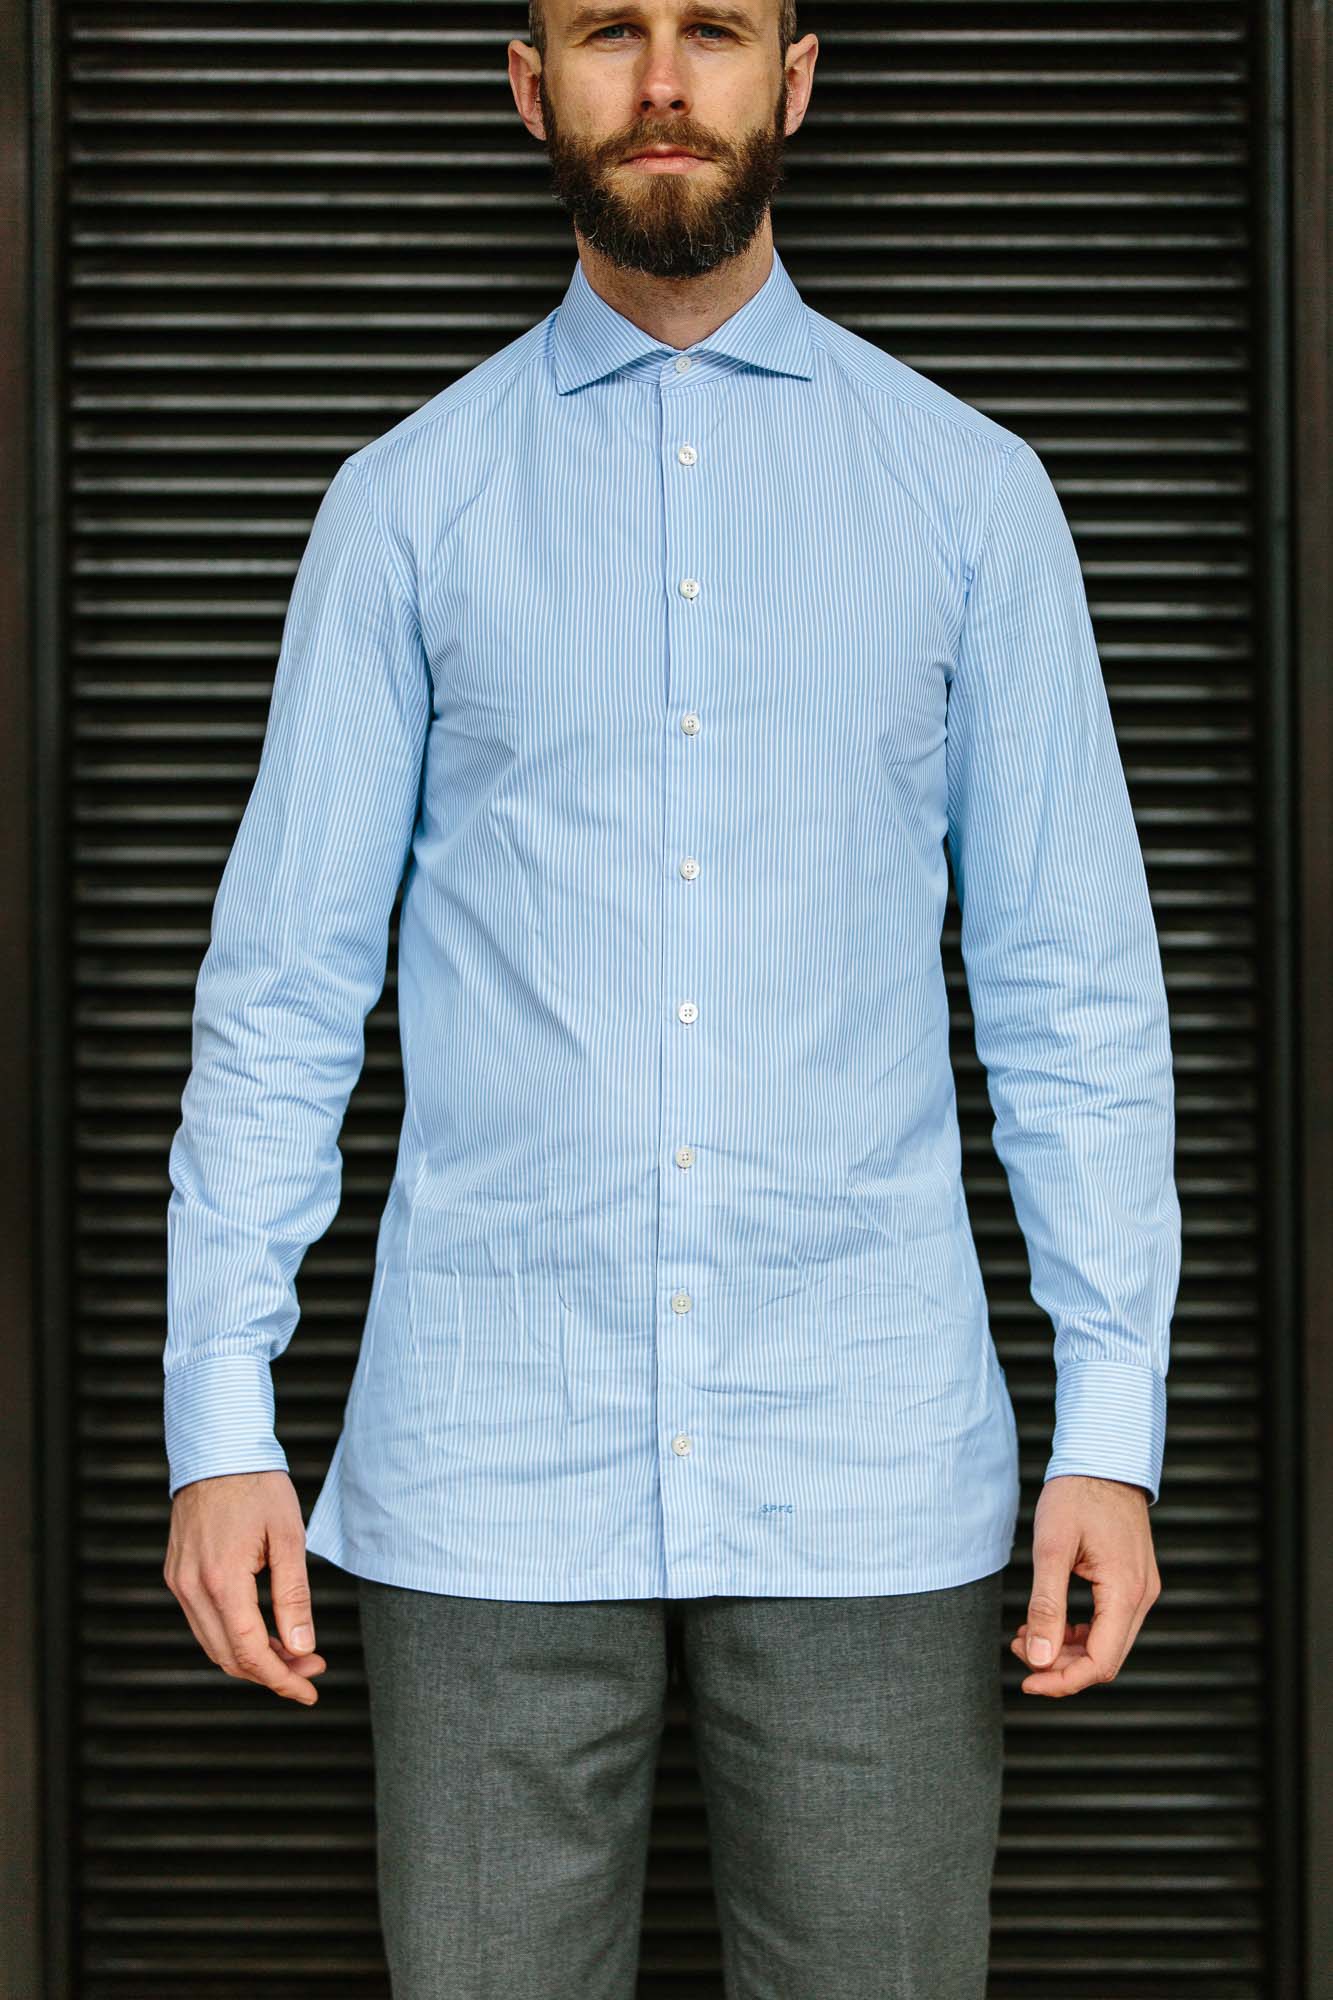 3D Pocket Monogram Cotton T-Shirt - Luxury Blue